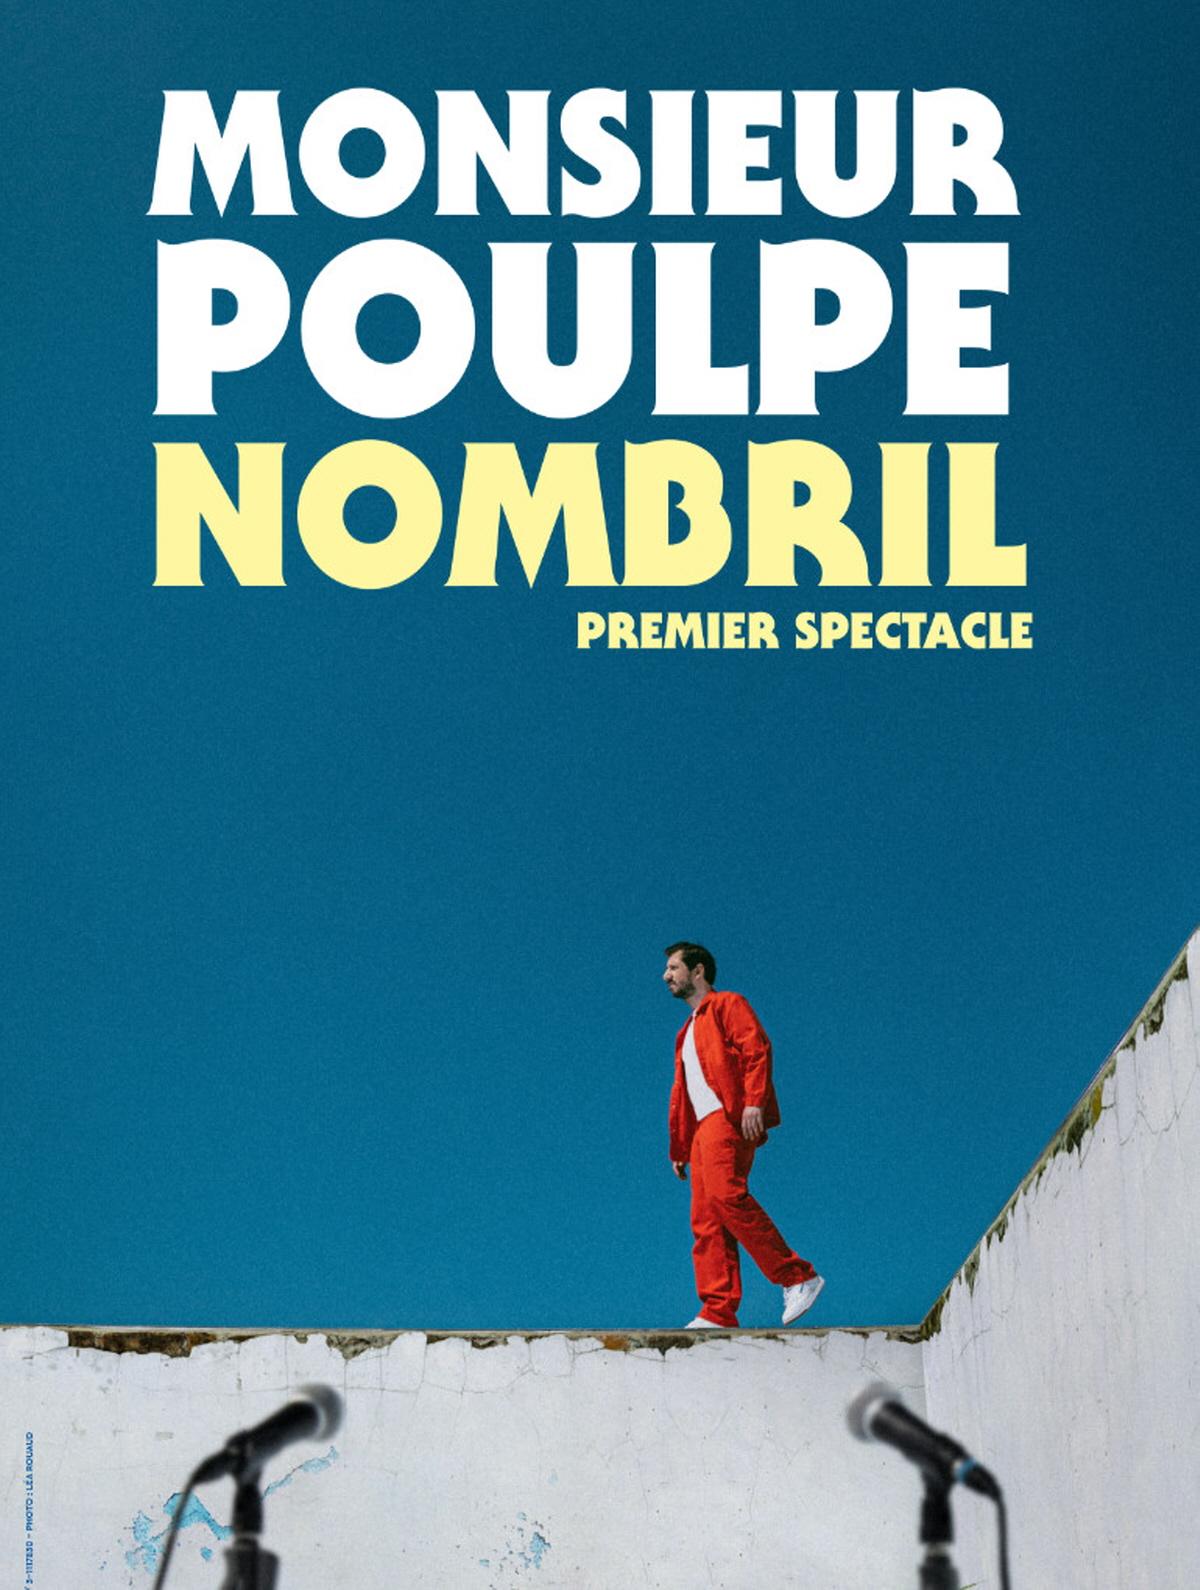 Monsieur Poulpe - Le Kabaret - Reims - Tinqueux (51)